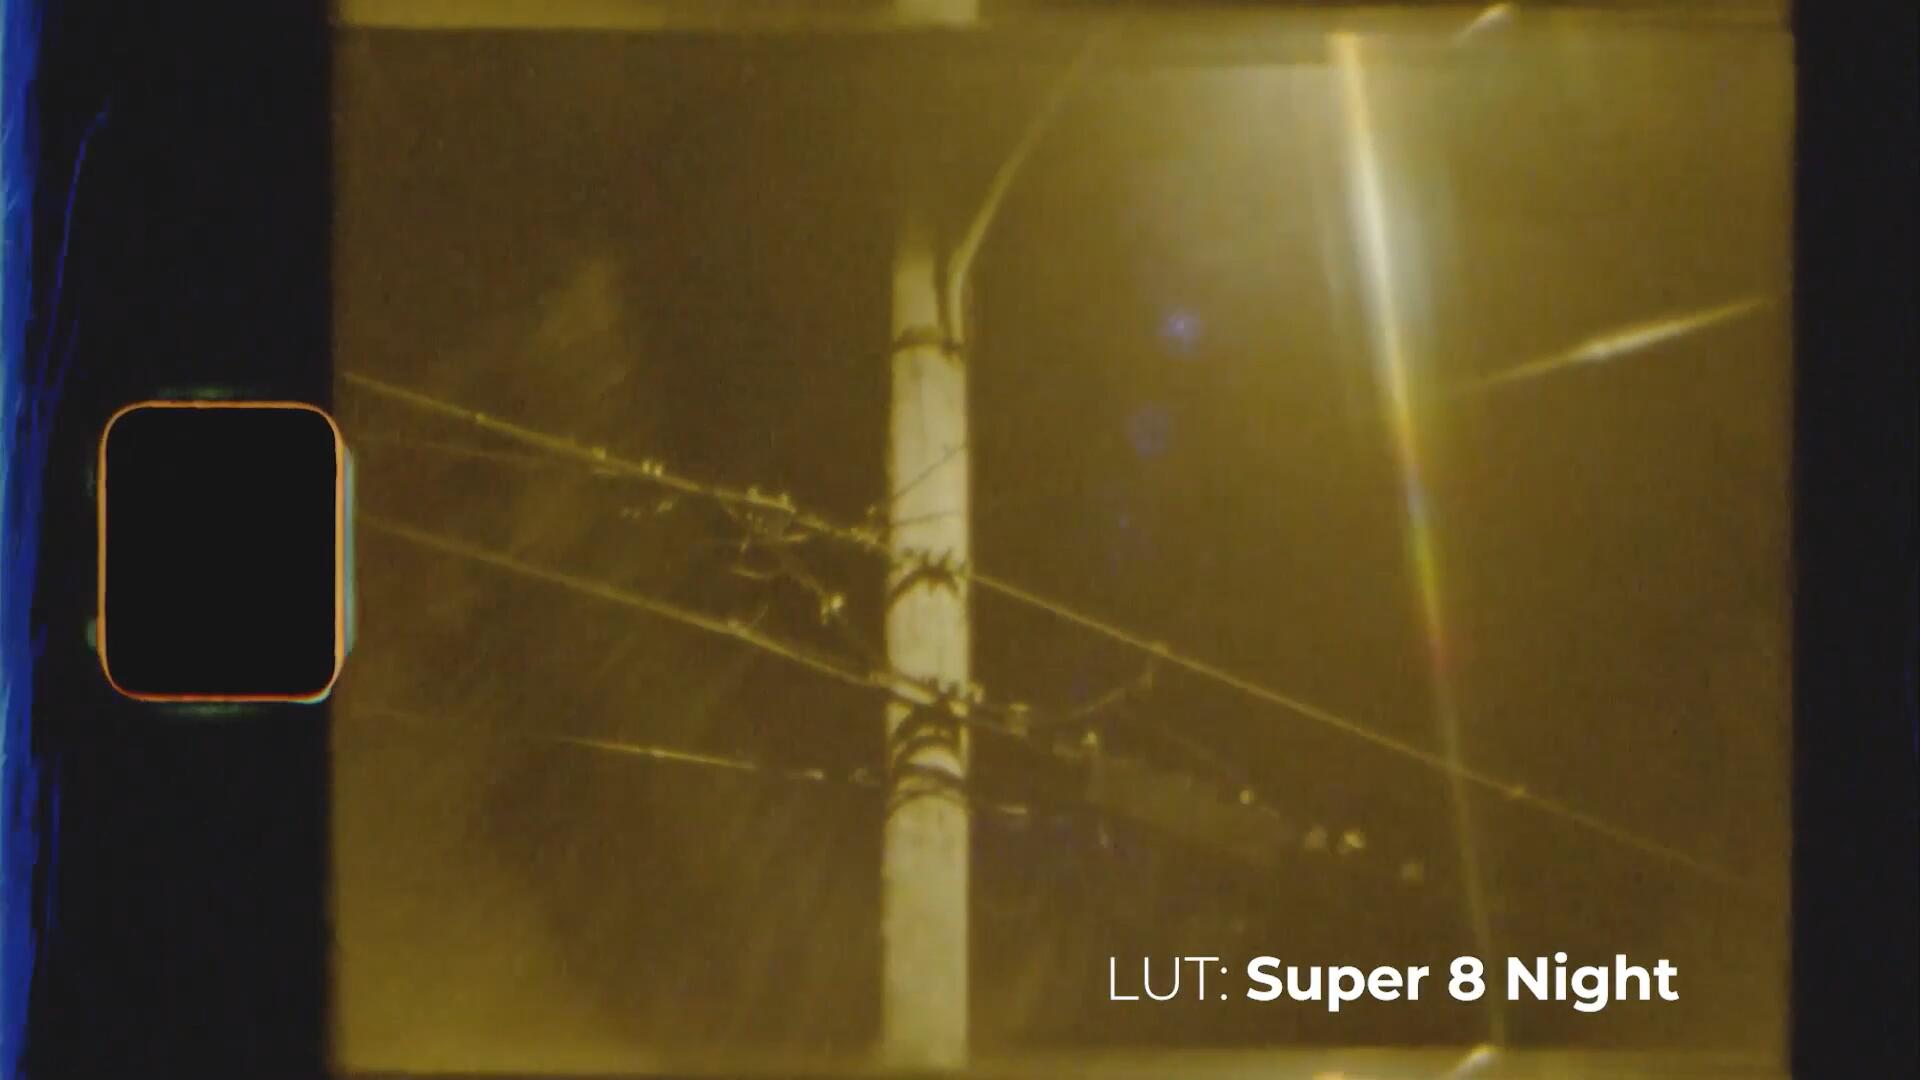 复古柯达Super 8情绪电影胶片感色彩日光夜景LUT调色预设包 （9697）图层云